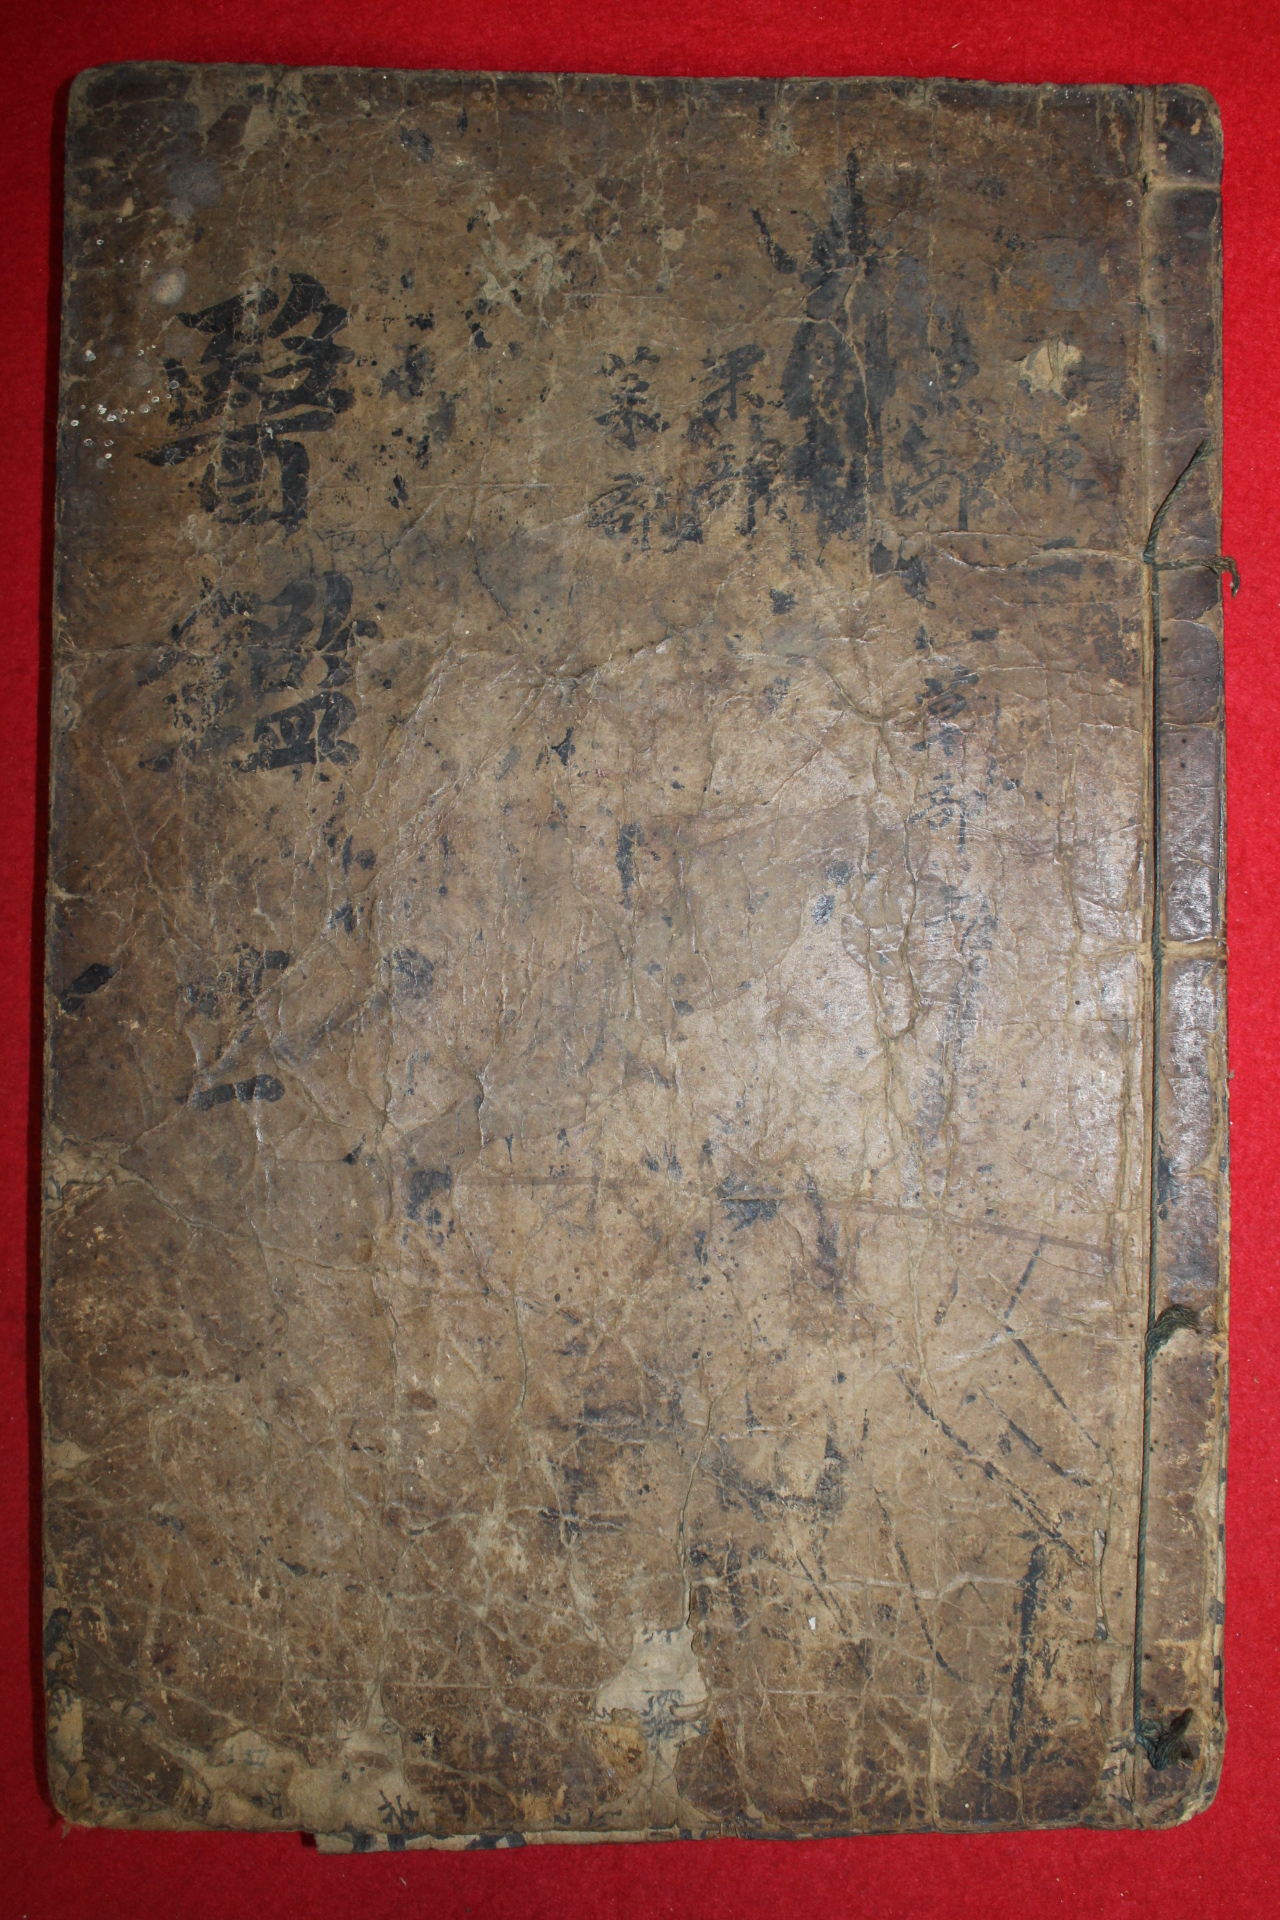 1600년대 고목판본 세계문화유산등재된 동의보감탕액편 권2  1책